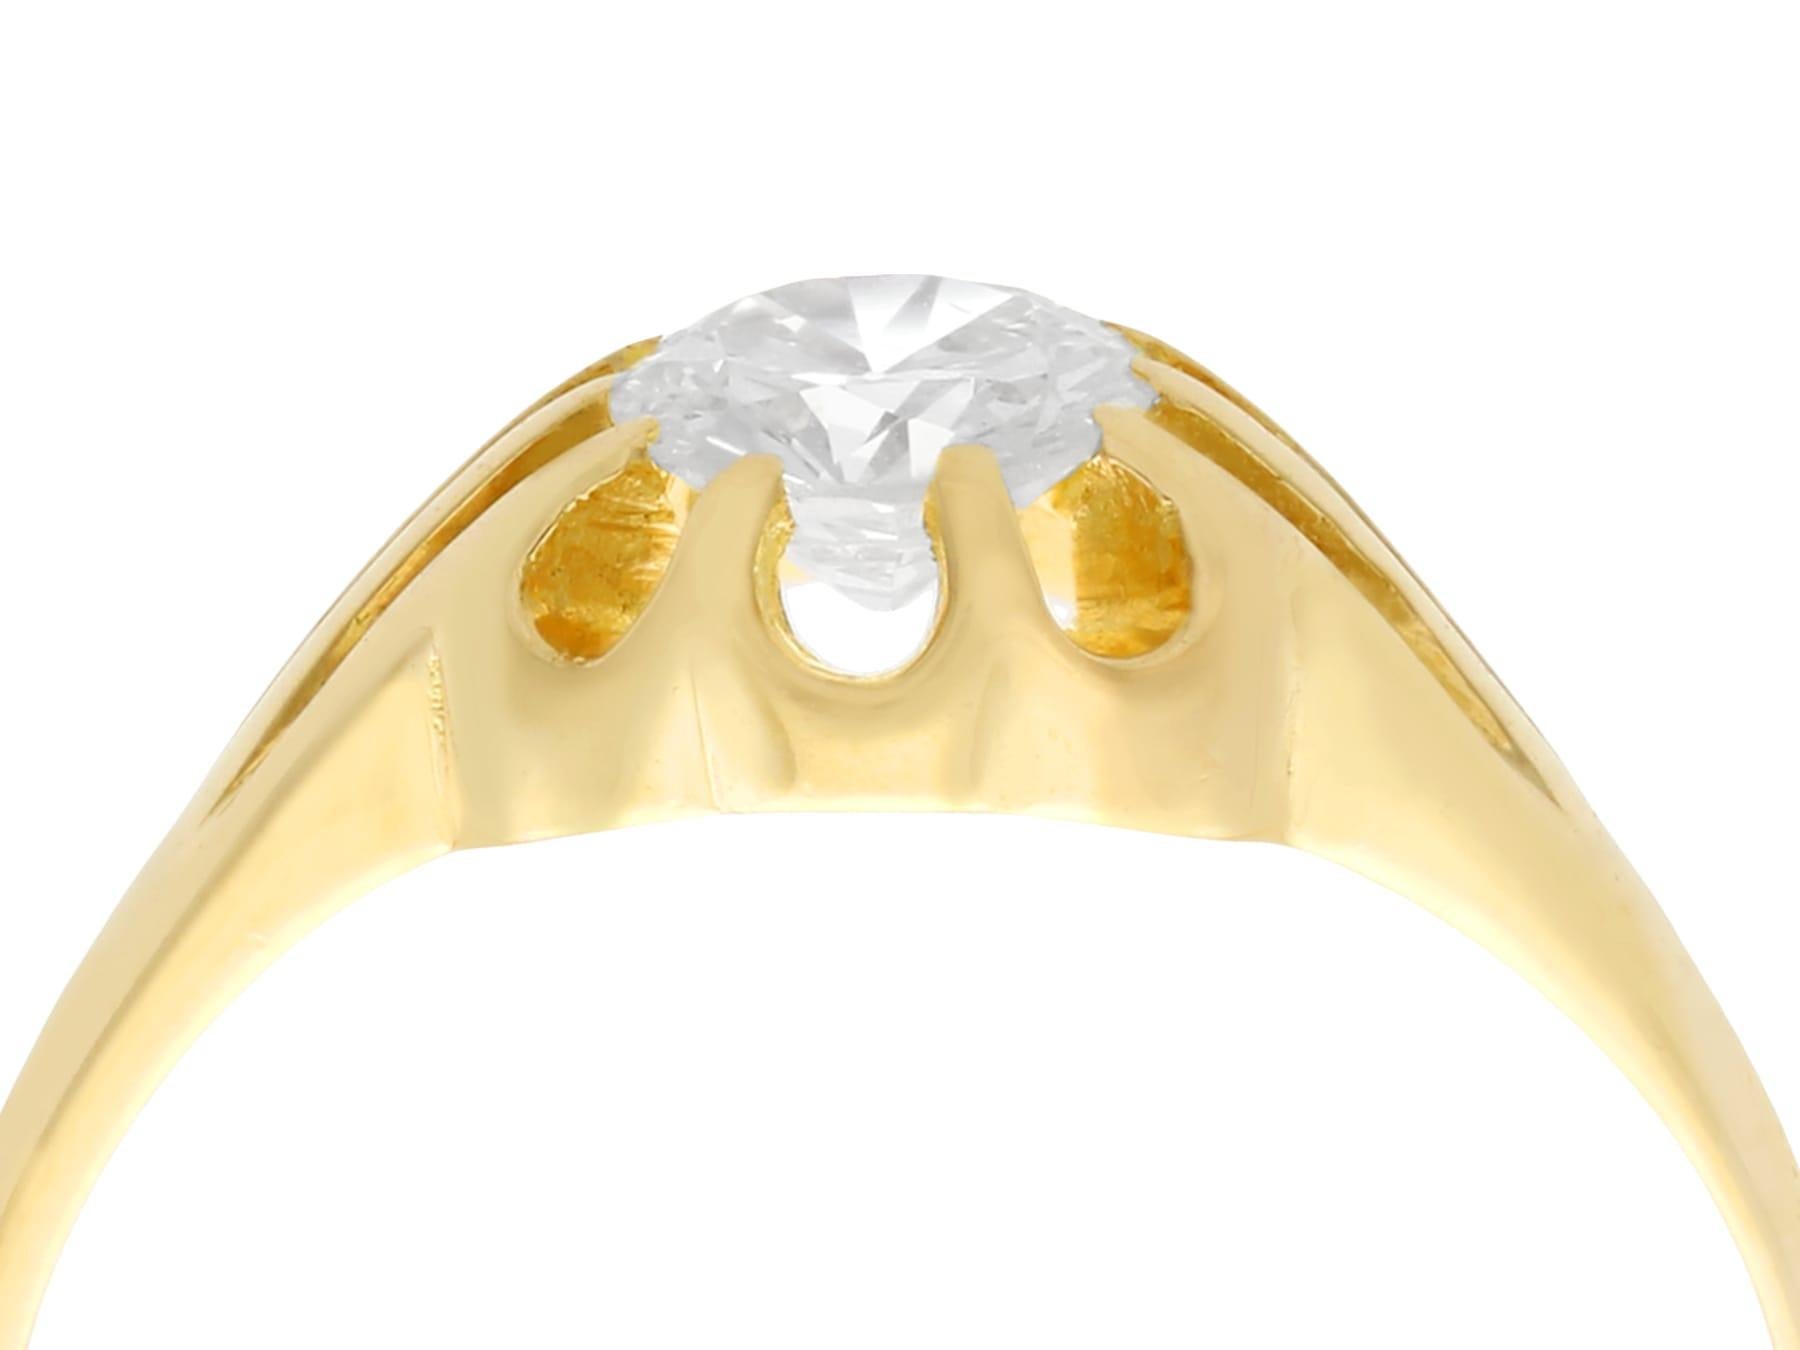 Ein feiner und beeindruckender antiker 0,73 Karat runder europäischer Diamant-Solitär in einer Vintage-Fassung aus 18 Karat Gelbgold; eine Ergänzung zu unseren Sammlungen von antikem Schmuck und Nachlassschmuck.

Dieser beeindruckende antike